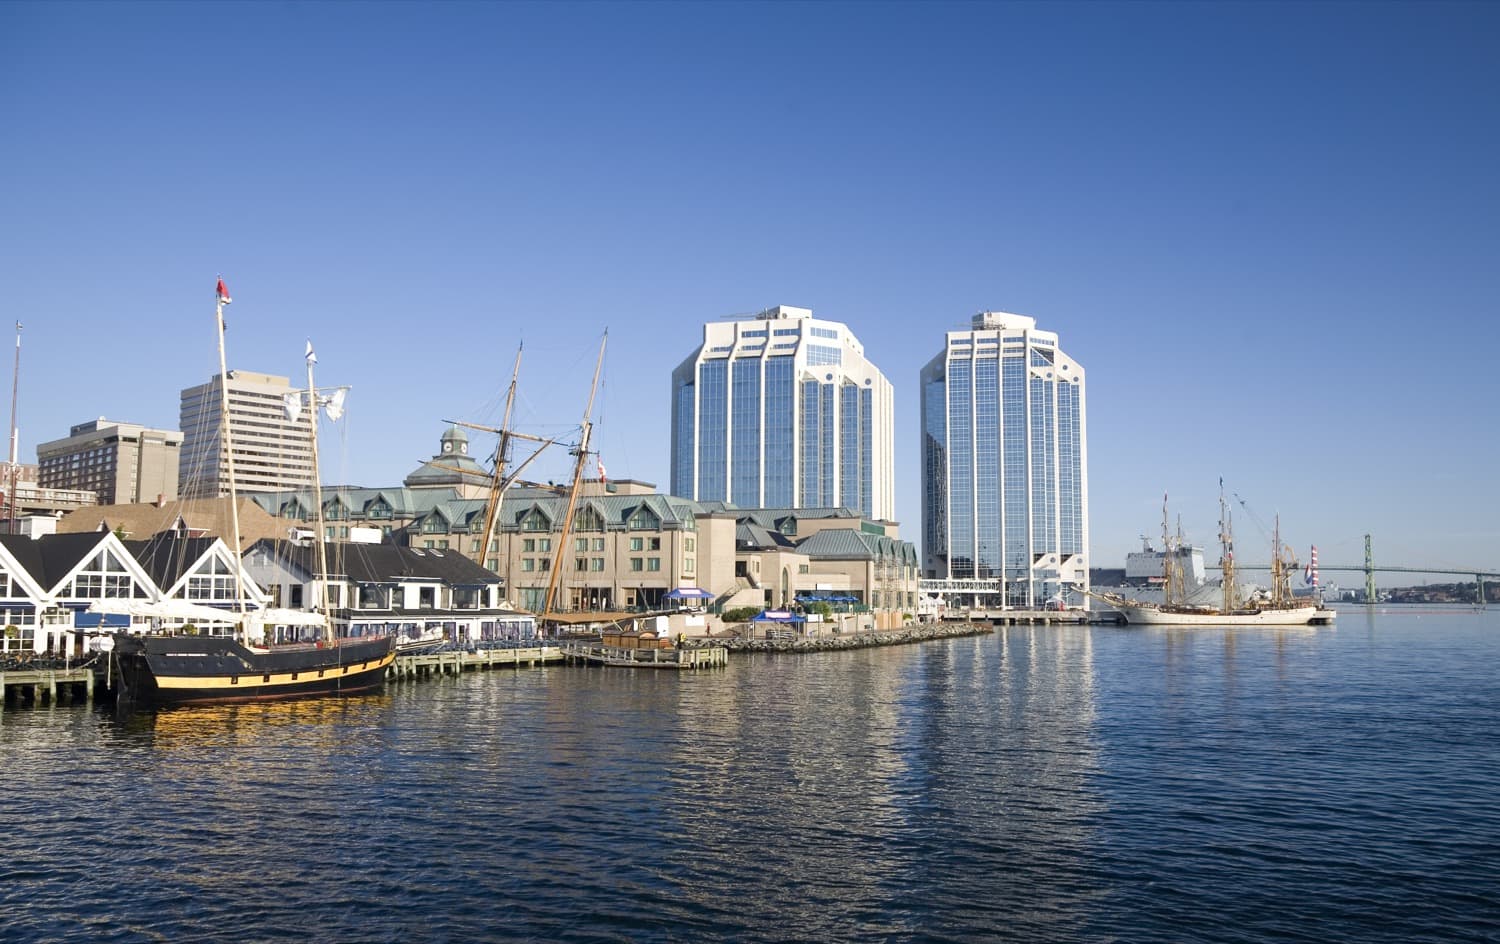 Bateau et condos au bord de l'eau à Halifax.